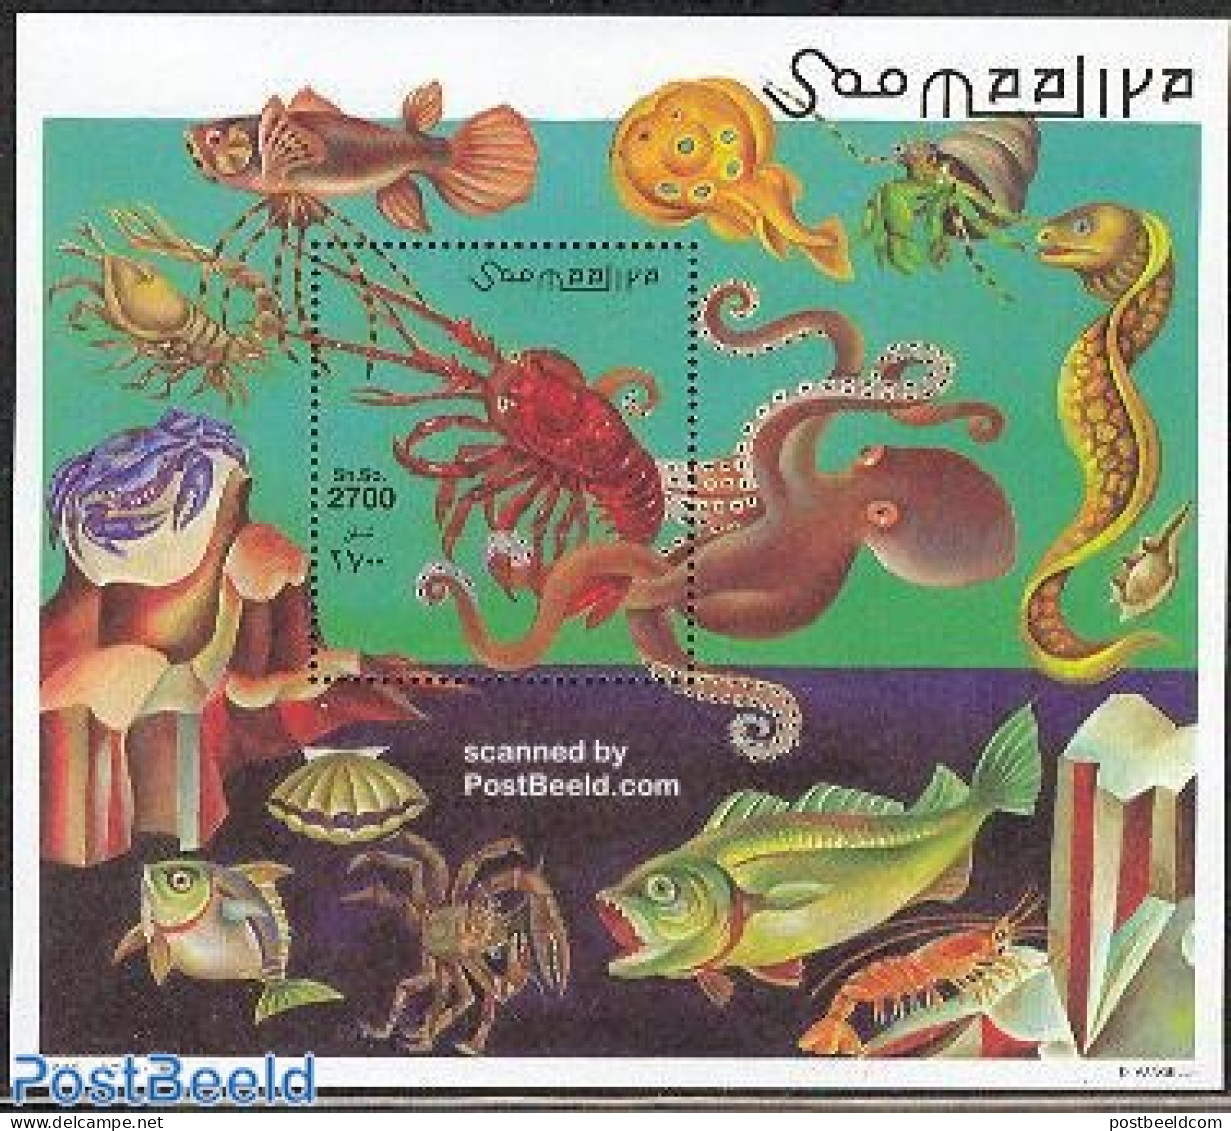 Somalia 1998 Crabs S/s, Mint NH, Nature - Shells & Crustaceans - Mundo Aquatico